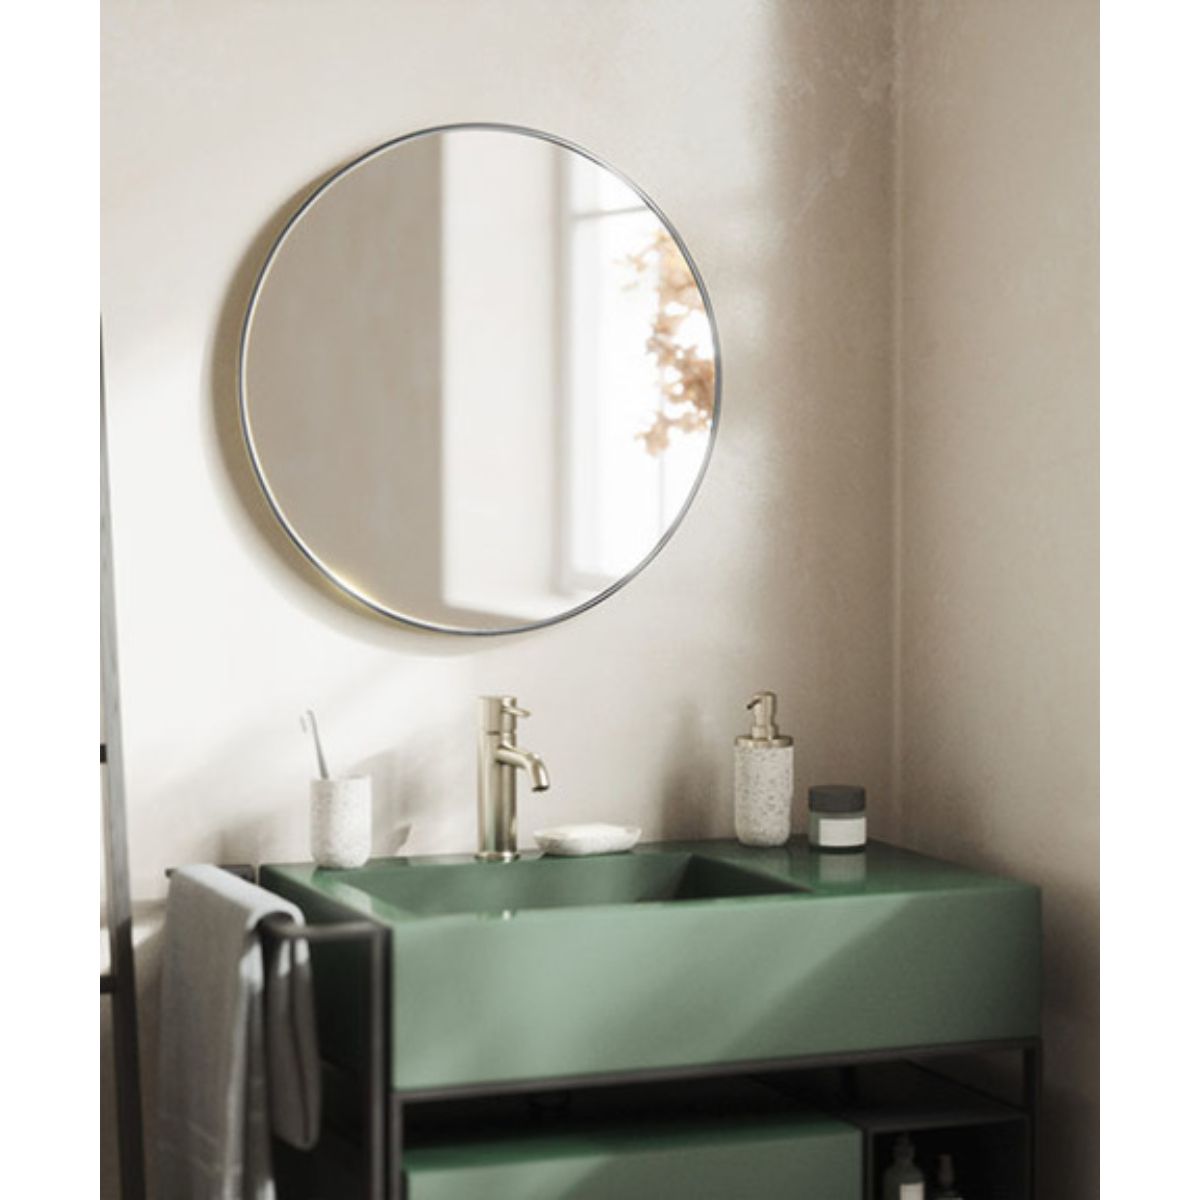 SALE】 株式会社アイビー 鏡の直販店洗面鏡 化粧鏡 トイレ鏡 浴室鏡 クリスタルミラーシリーズ サークル ウエーブ